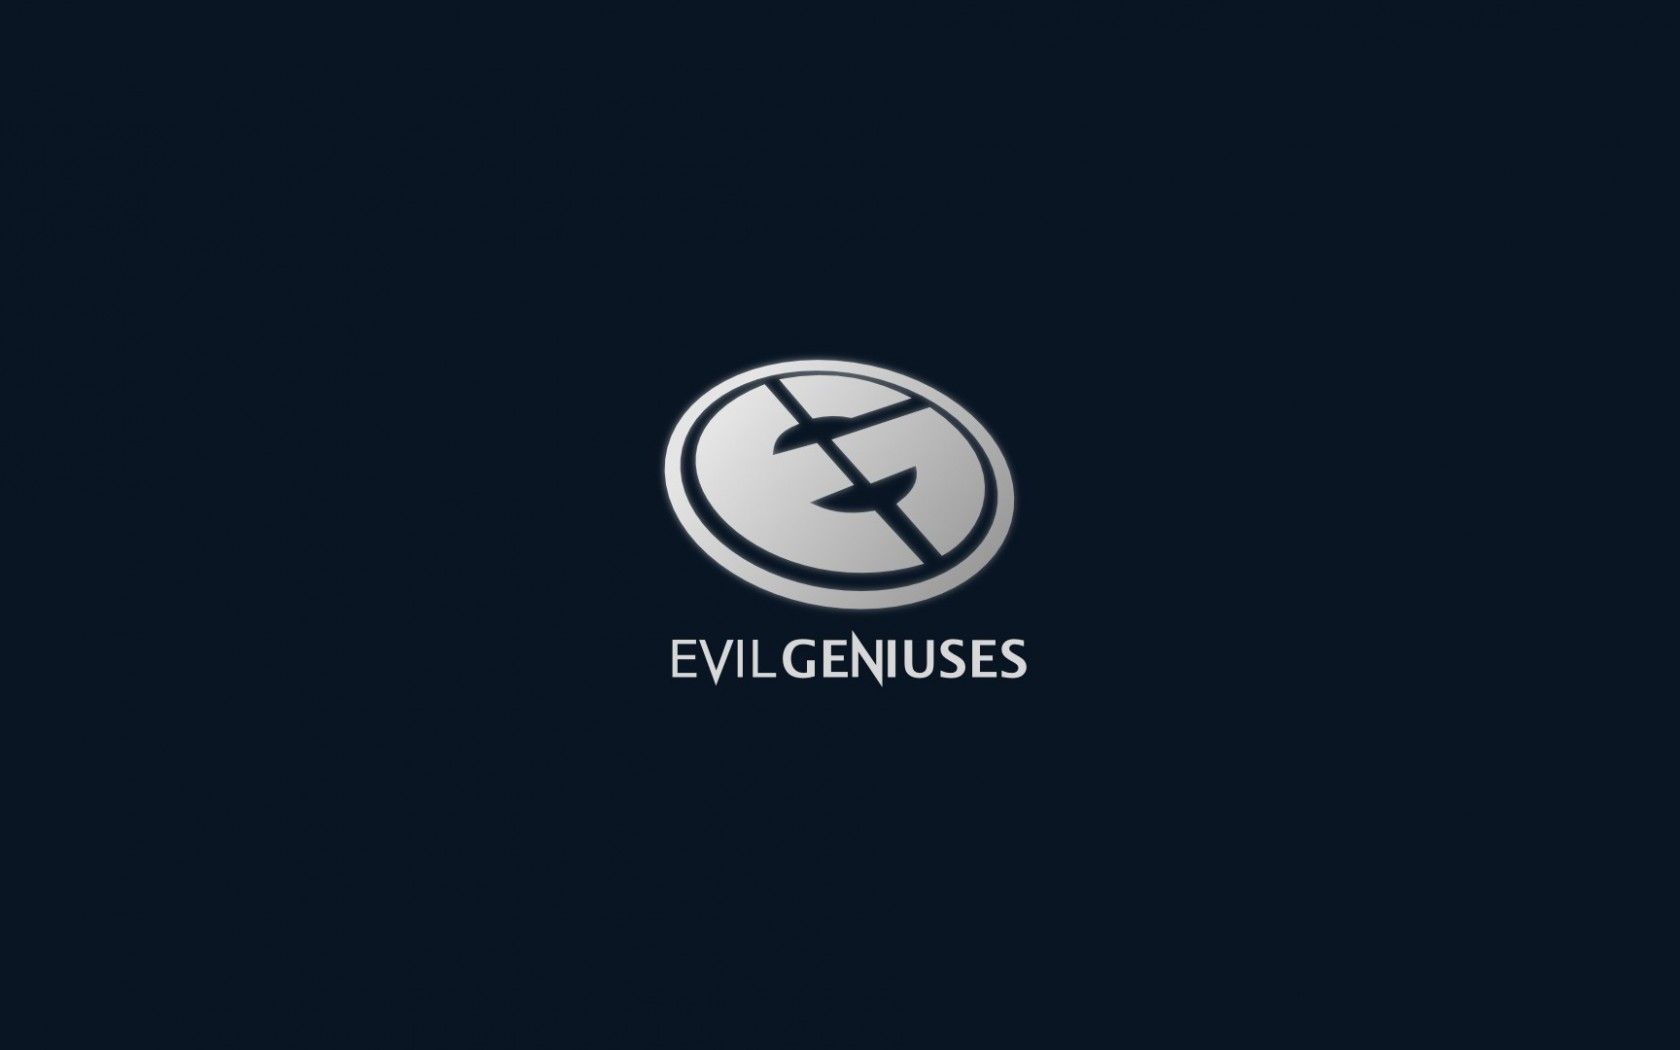 Evil Geniuses Logo Wallpaper HD. Download desktop Evil Geniuses